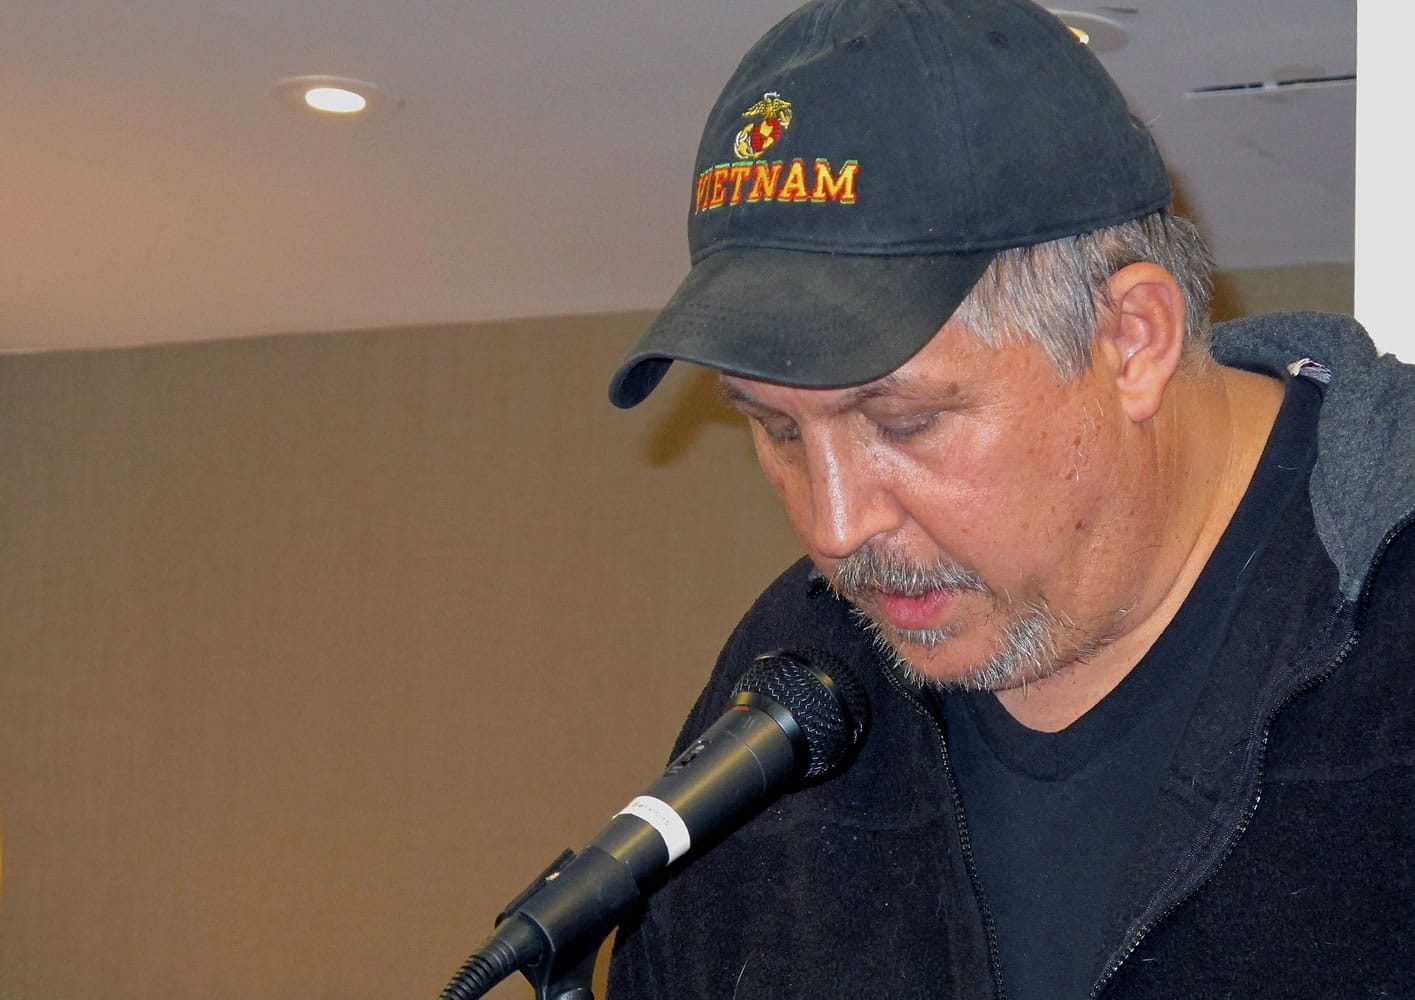 Vietnam veteran Matt Phair reads from his work at the Veterans Writing Workshop in Harrison, N.Y.